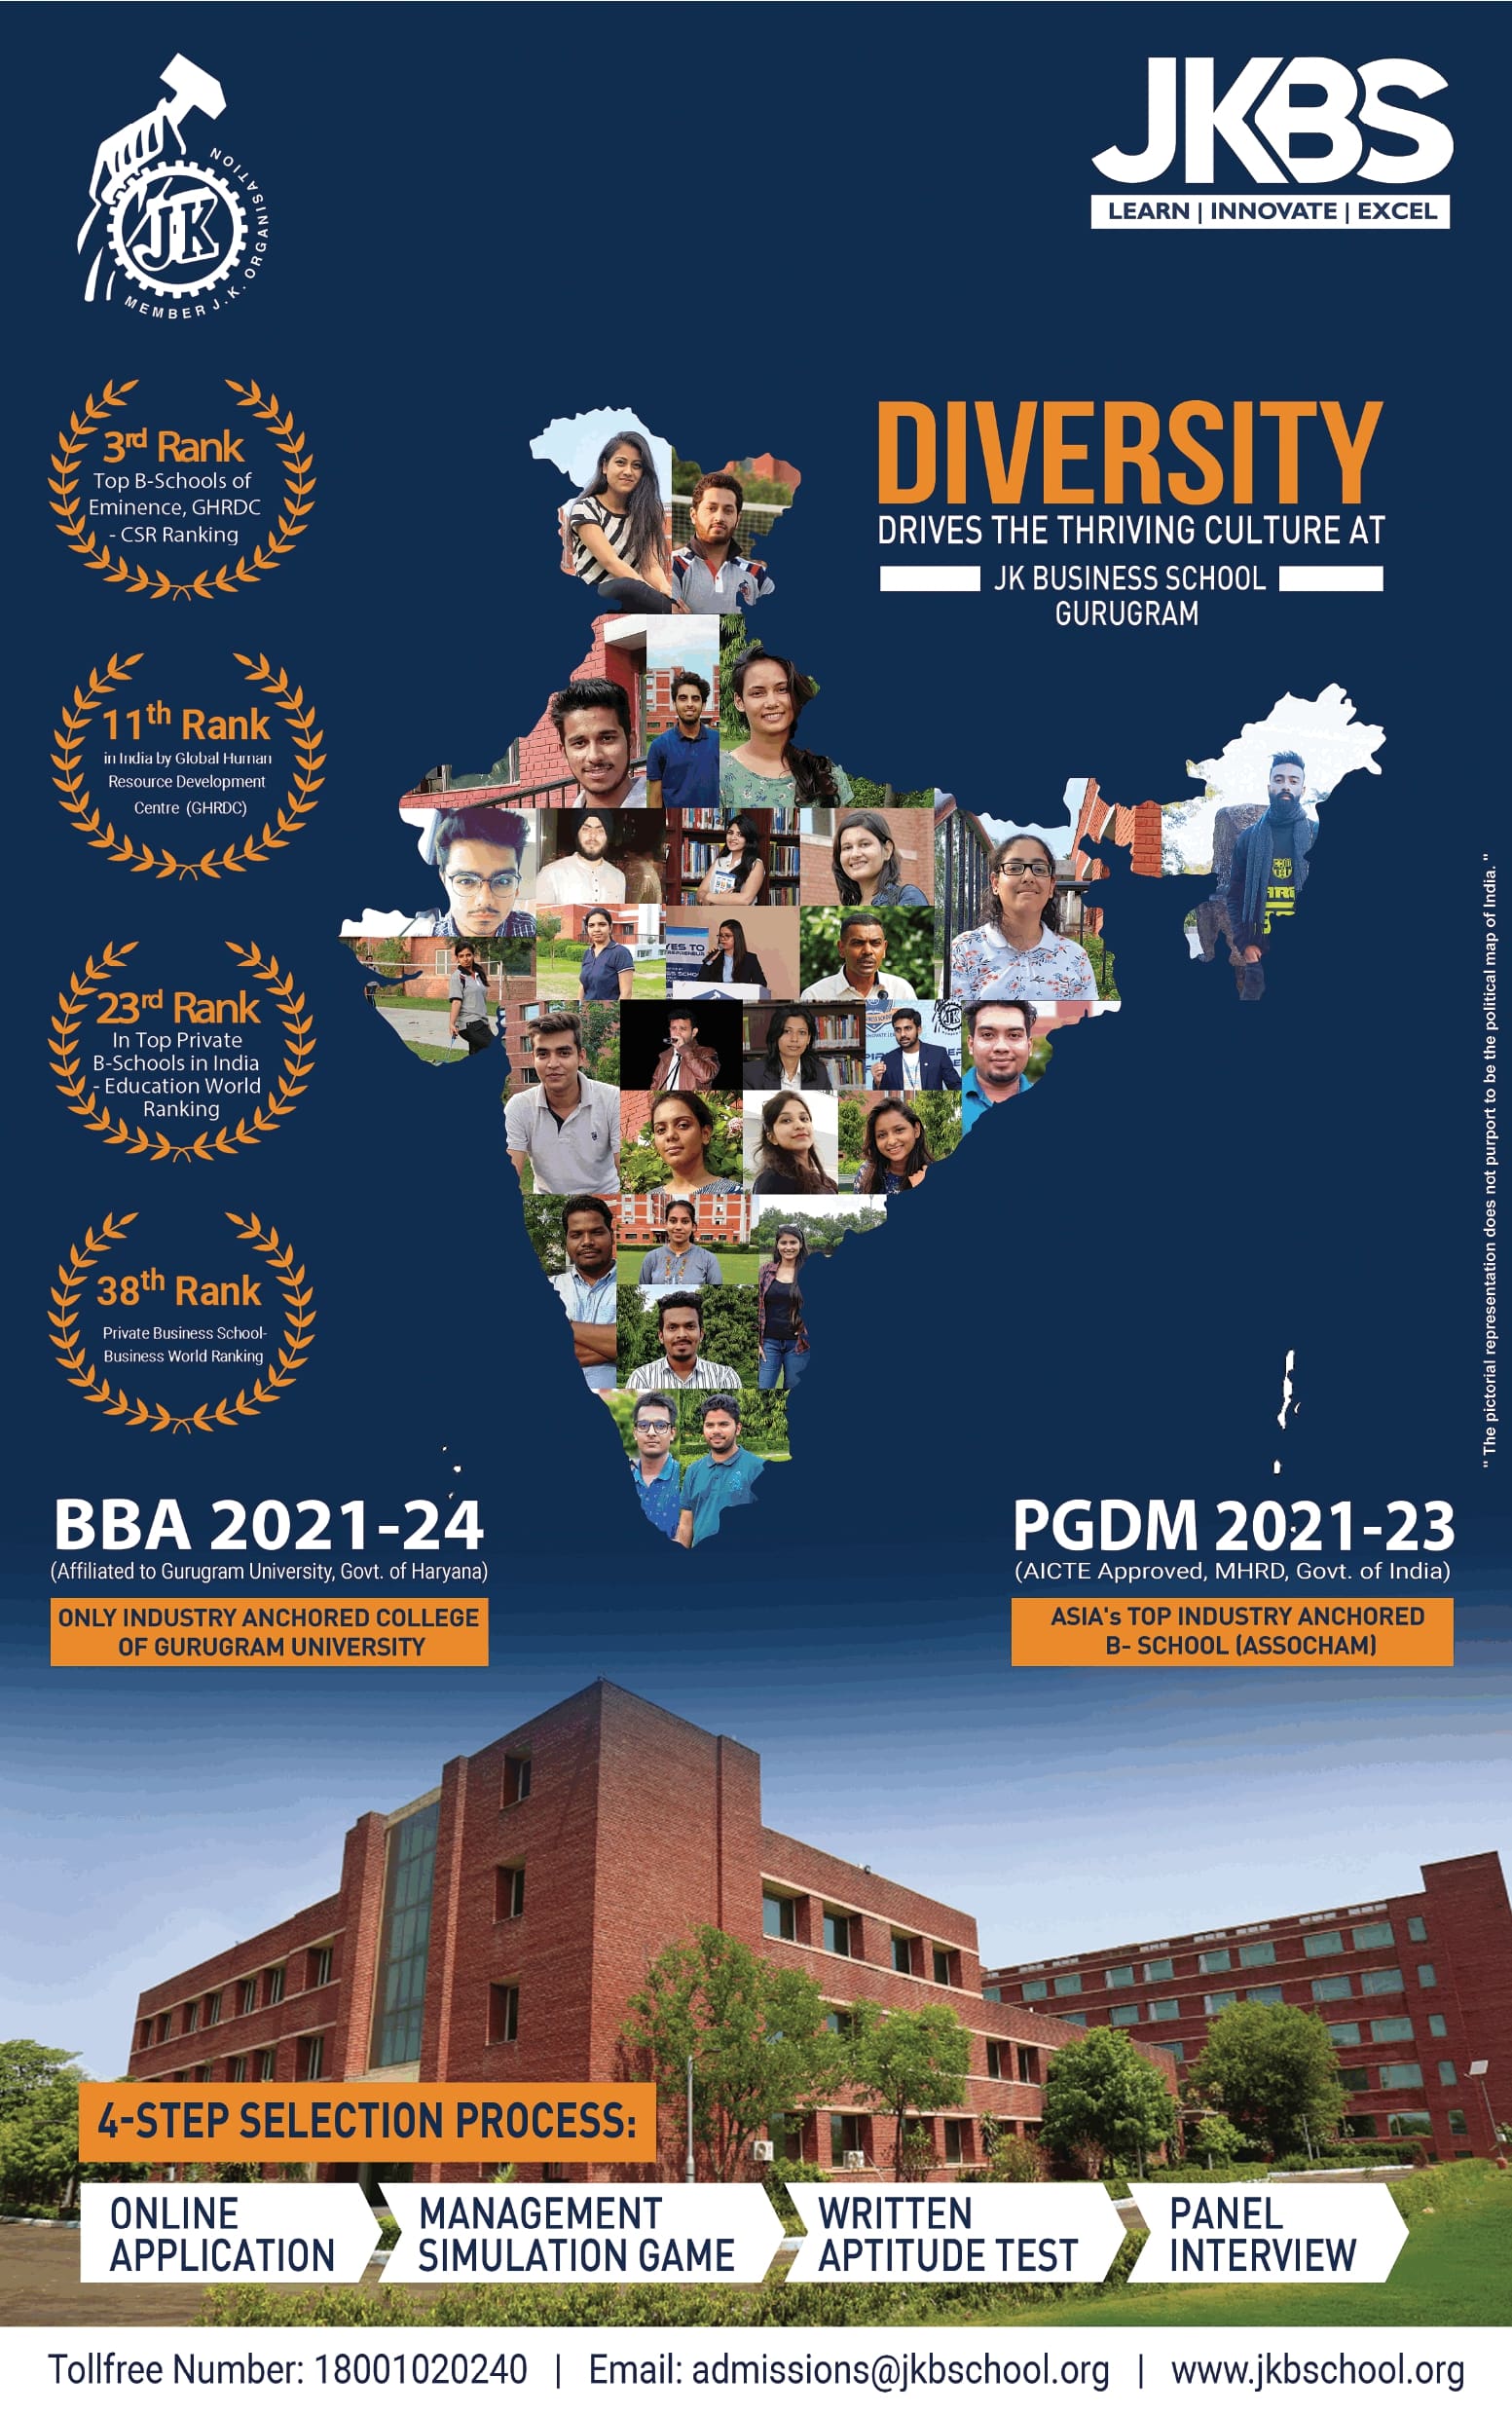 jkbs-diversity-drives-the-thriving-culture-at-jk-business-school-ad-delhi-times-05-06-2021